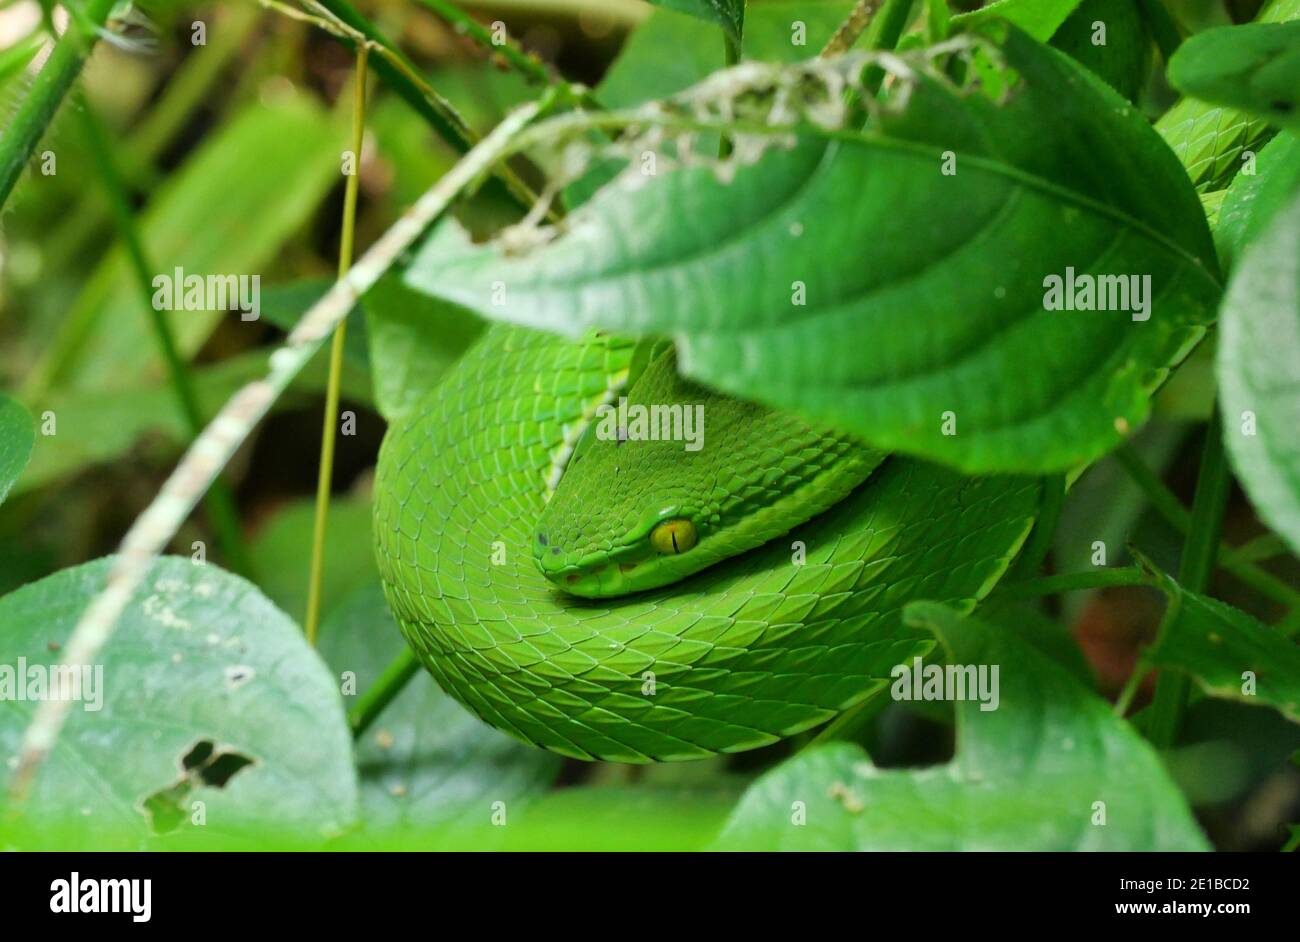 Víbora de Pit de labio blanco ( Trimeresurus albolabris ) Camuflaje de serpiente en el medio ambiente bajo la hoja, este reptil venenoso es de color verde brillante Foto de stock